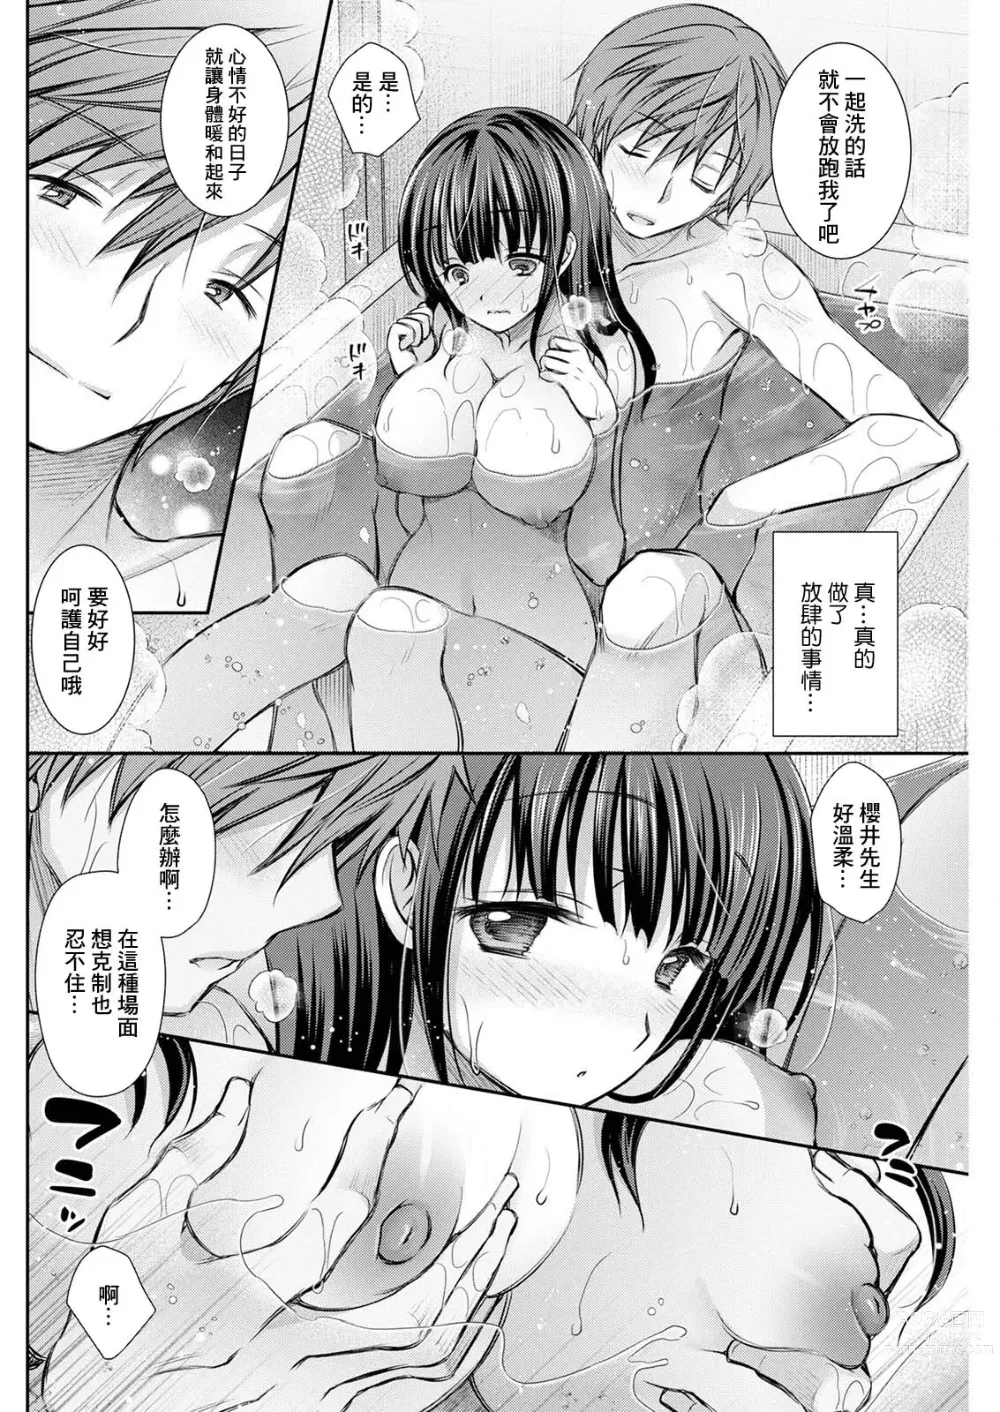 Page 6 of manga Wazawai Tenjite